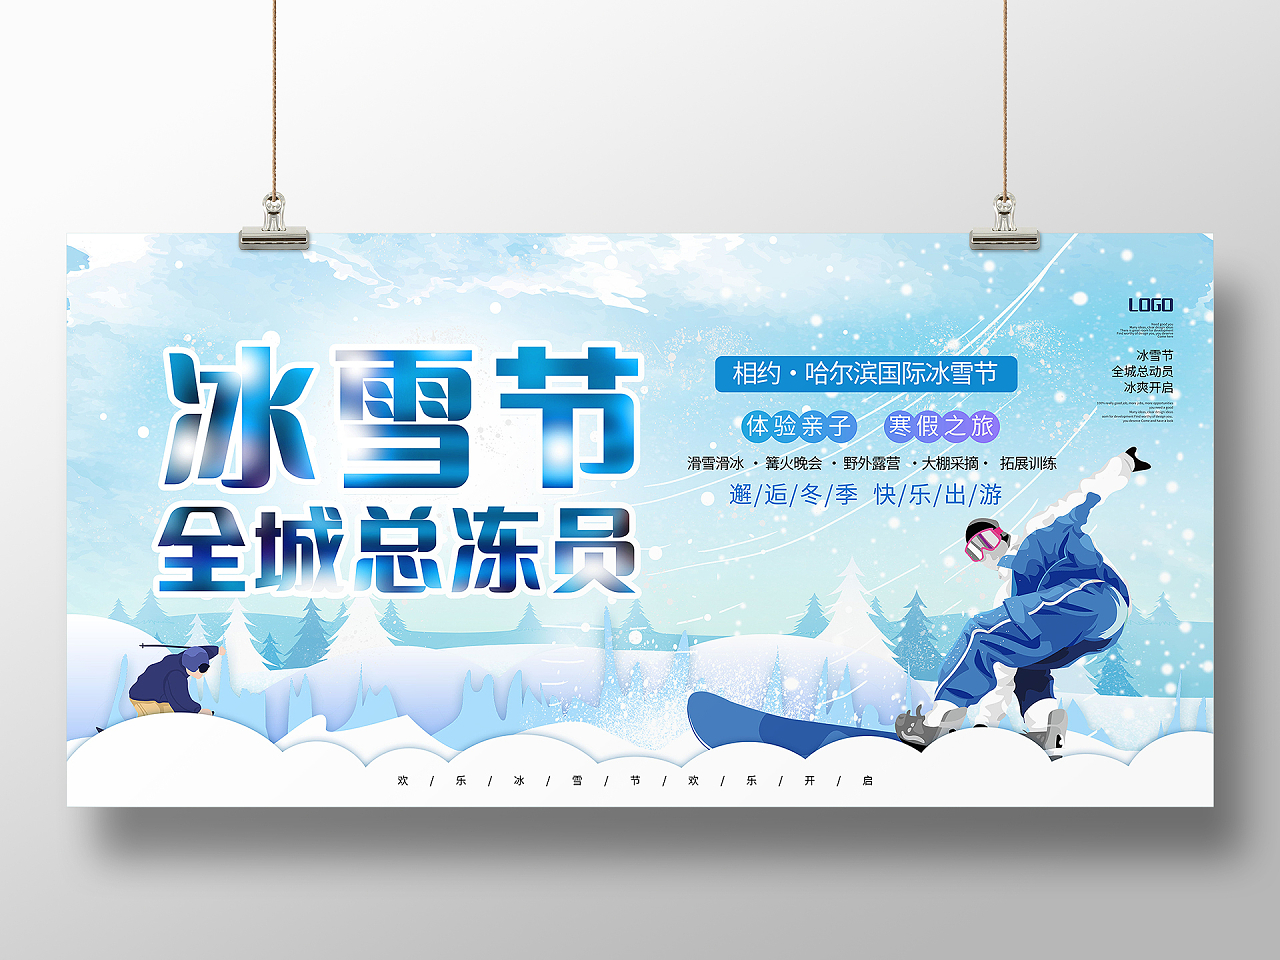 冰雪节全城总动员冰雪嘉年华畅游哈尔滨2022哈尔滨冰雪节展板